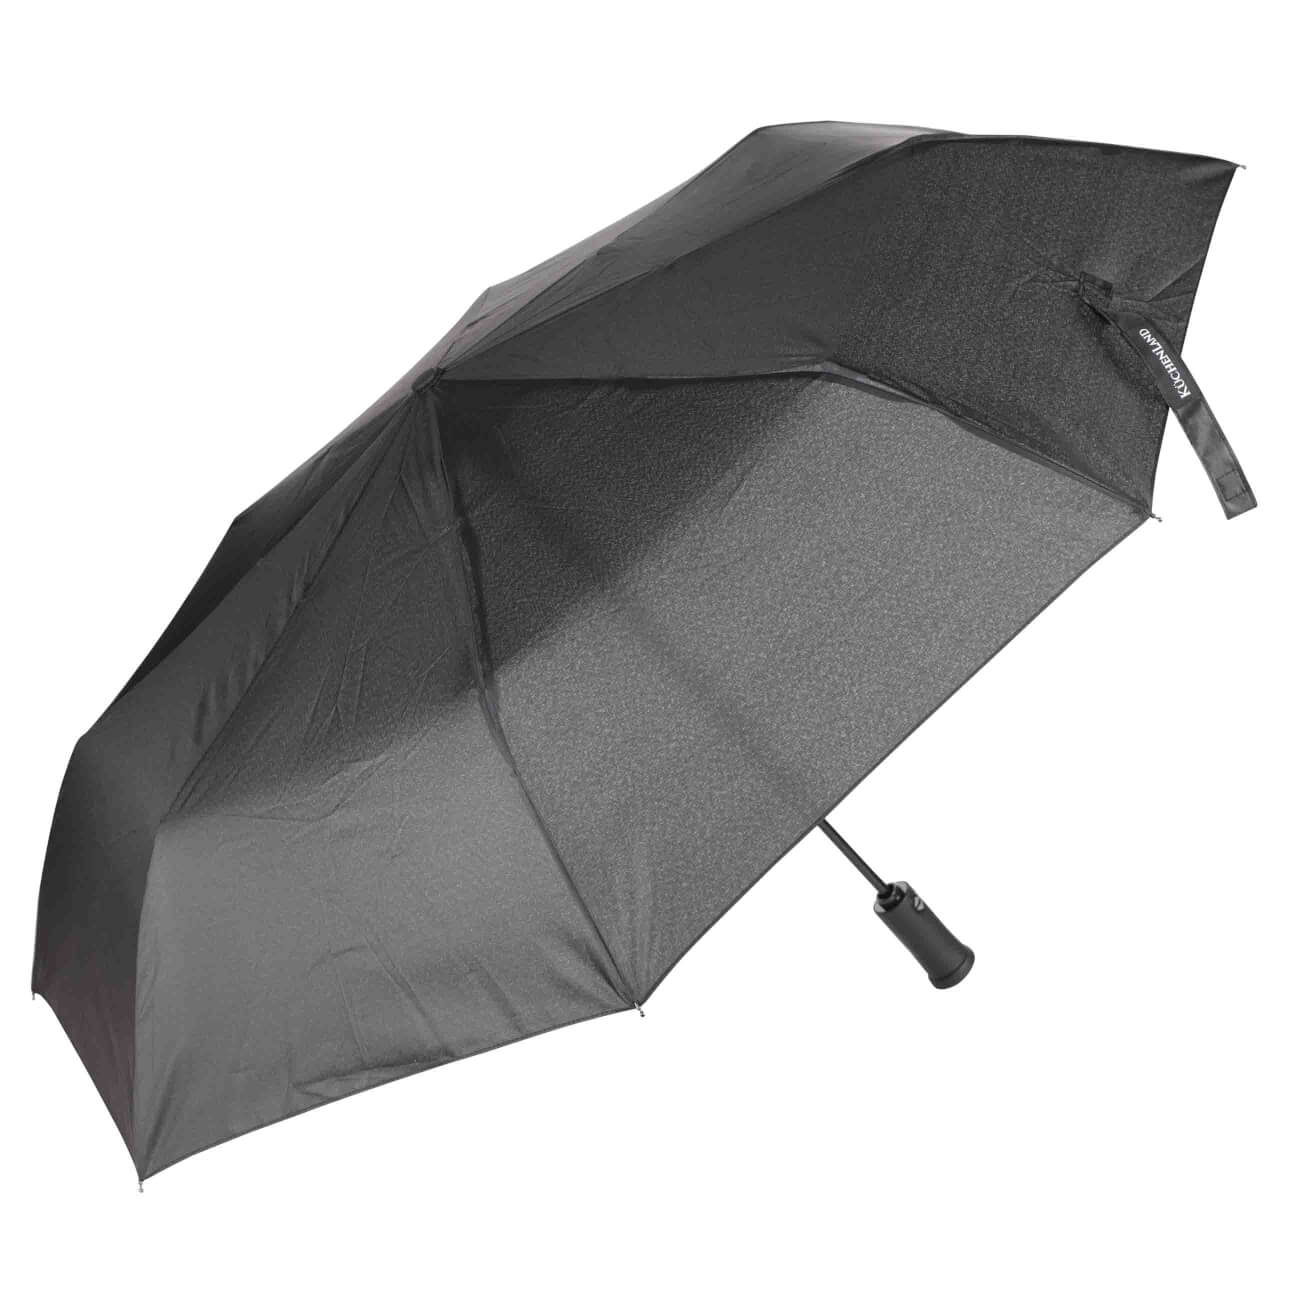 Зонт, 59 см, складной, автоматический, с фонариком, эпонж, черный, Ray light зонт 58 см складной автоматический эпонж rainy